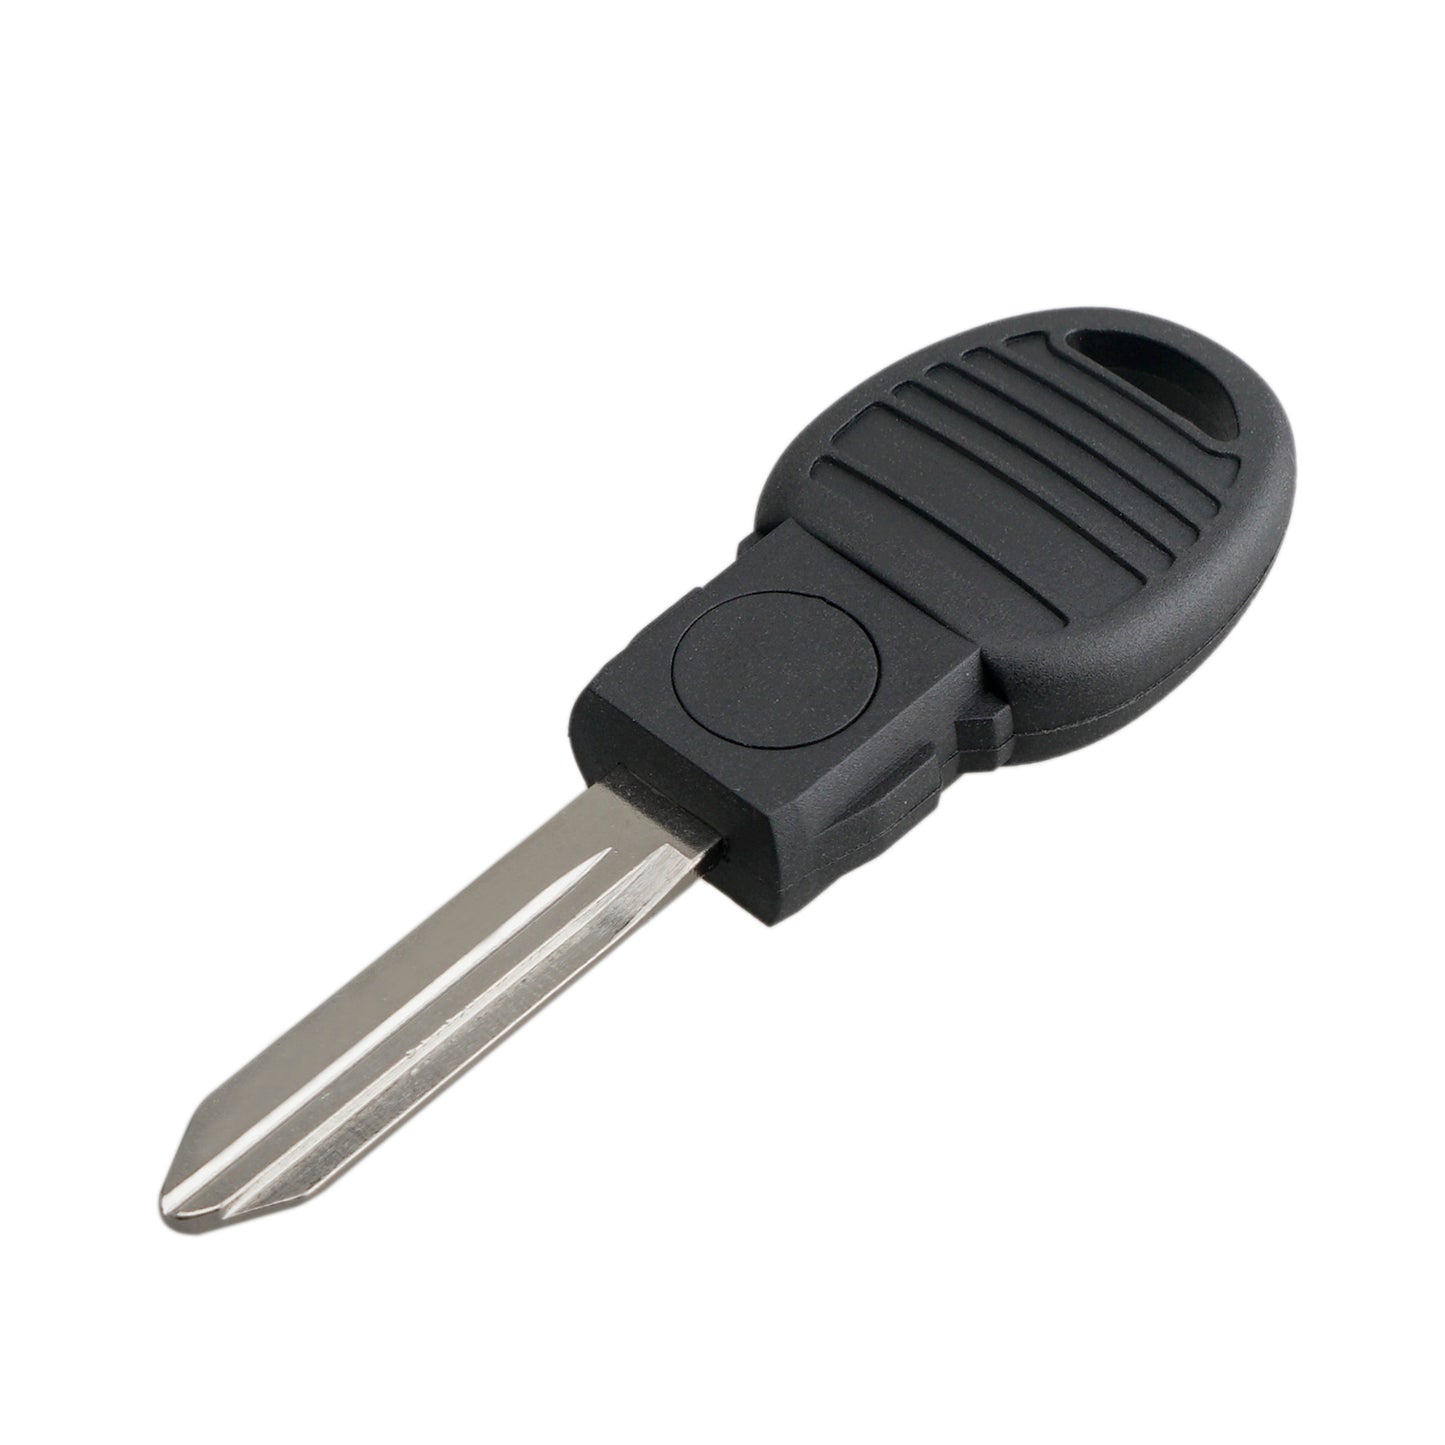 Transponder Ignition Key fits Chrysler Jeep Dodge Volkswegon Transponder Key fits Chrysler Jeep Dodge Volkswagen 46 Chip Y170-PT, 599874